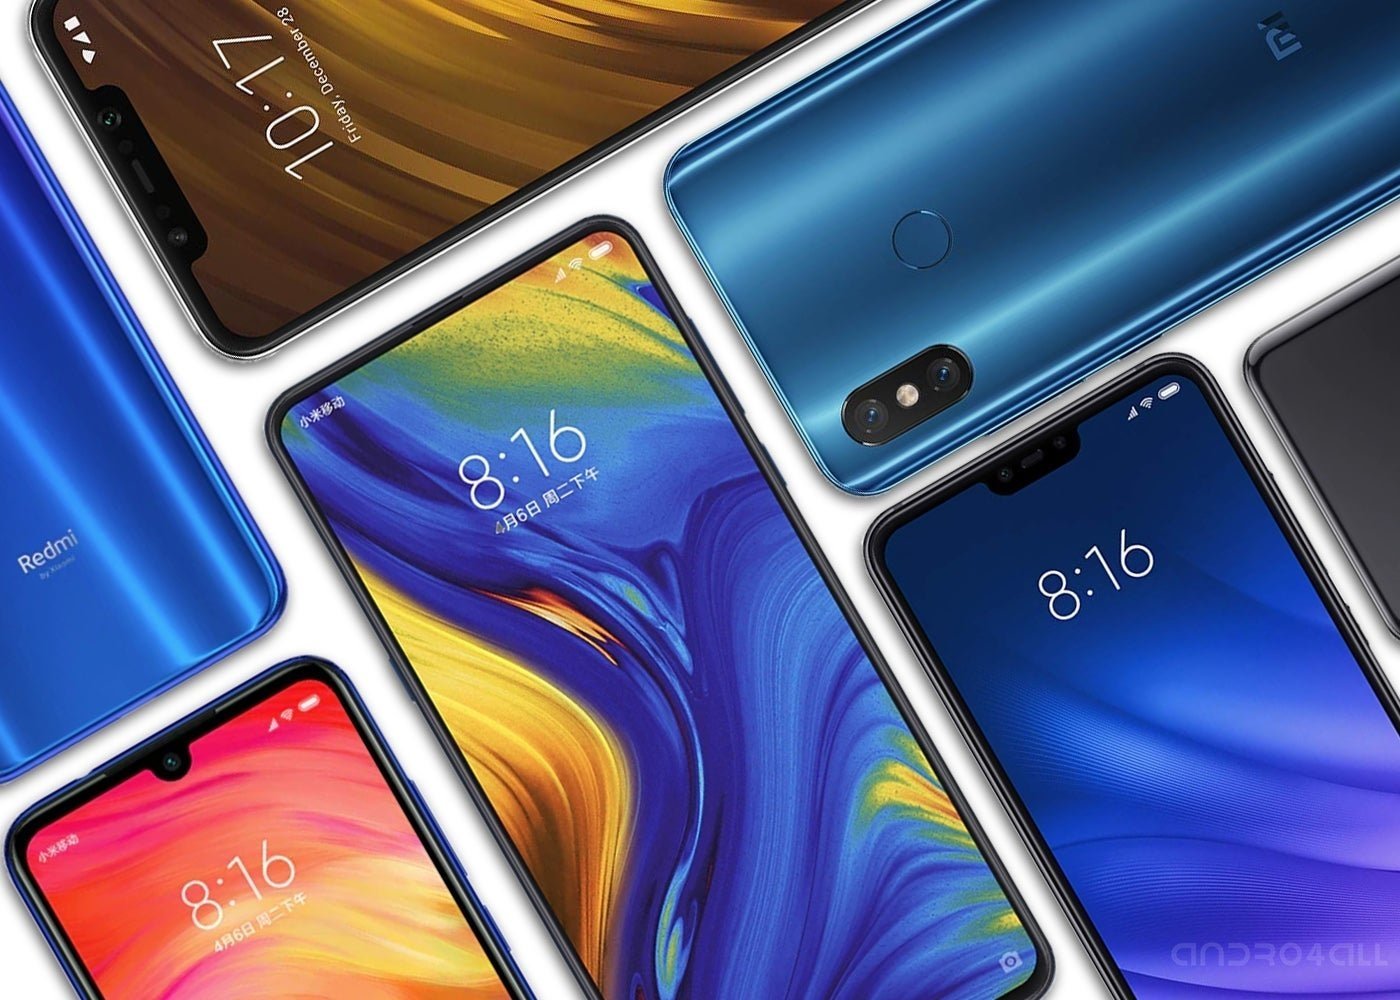 Moviles Xiaomi 2019 Catalogo Completo Actualizado